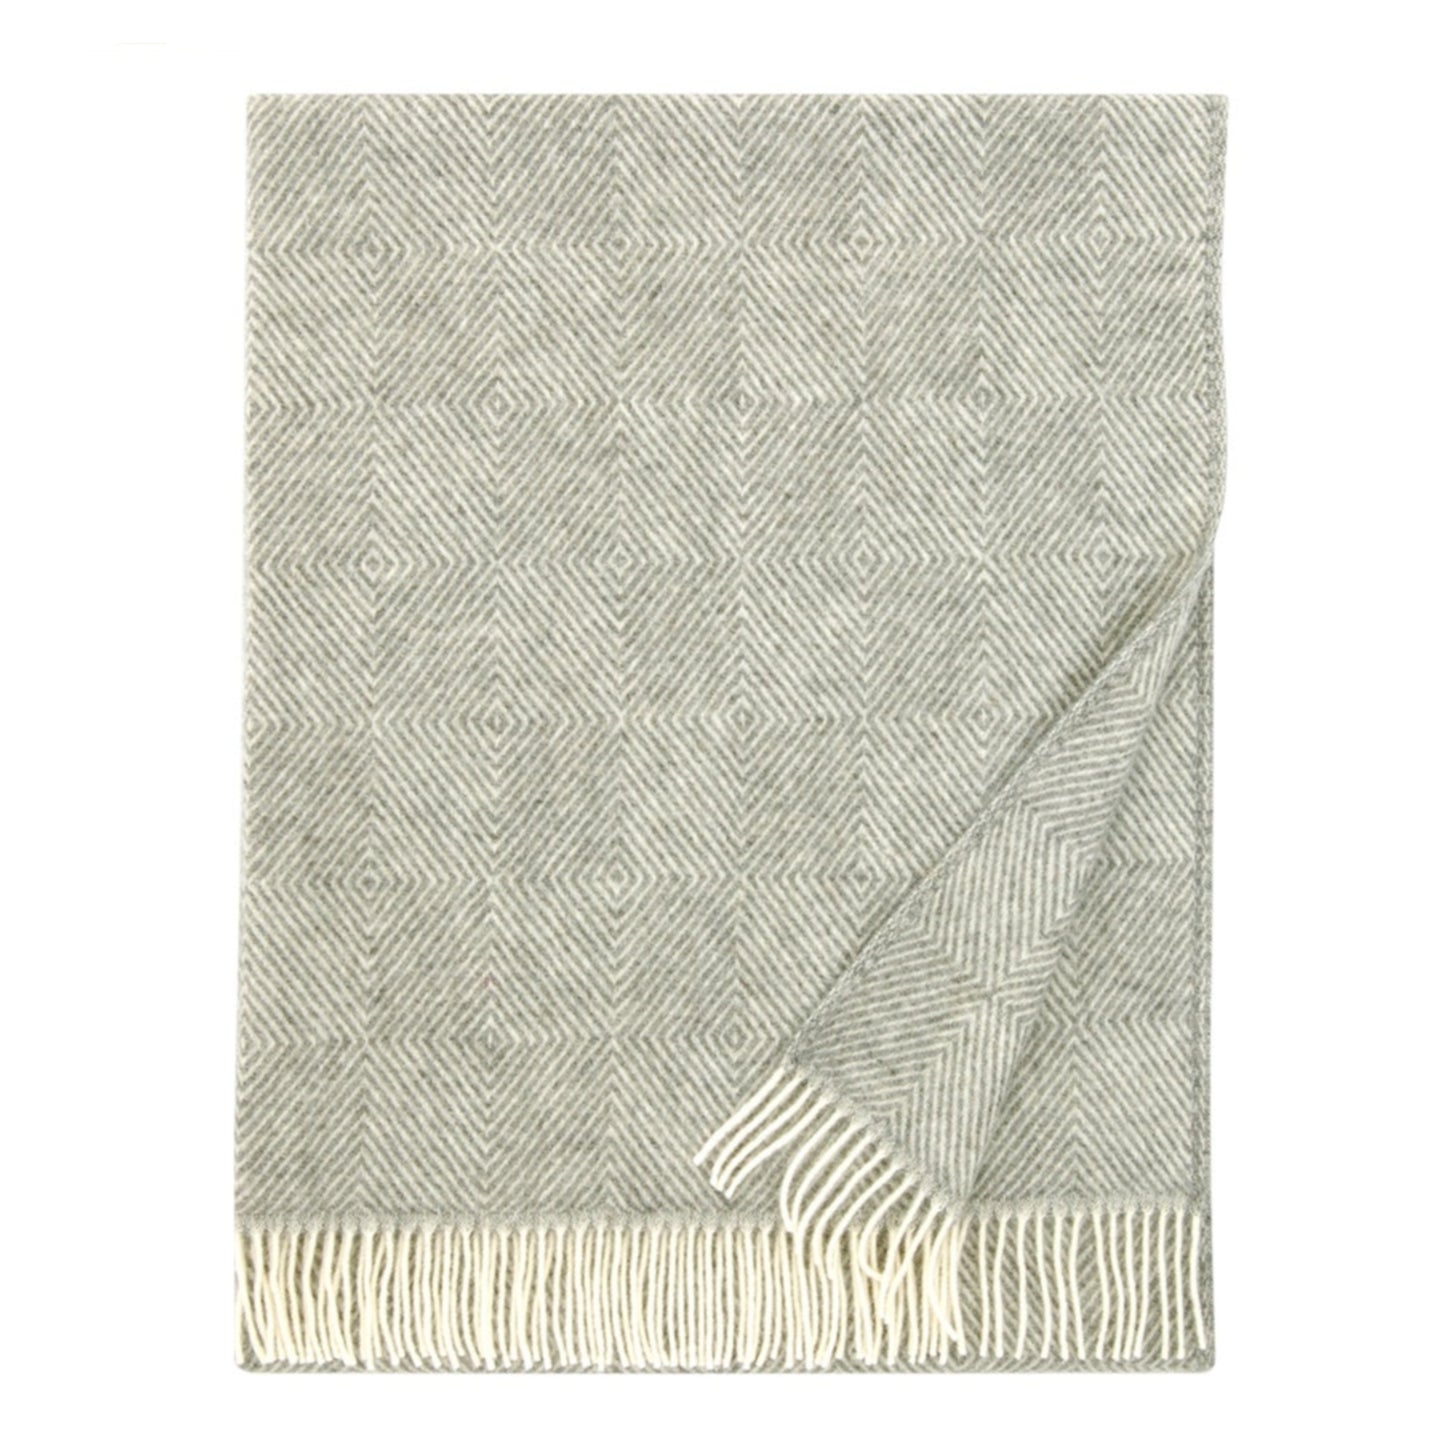 Maria Wool Throw 130x180cm, Grey-White (6807623139393)